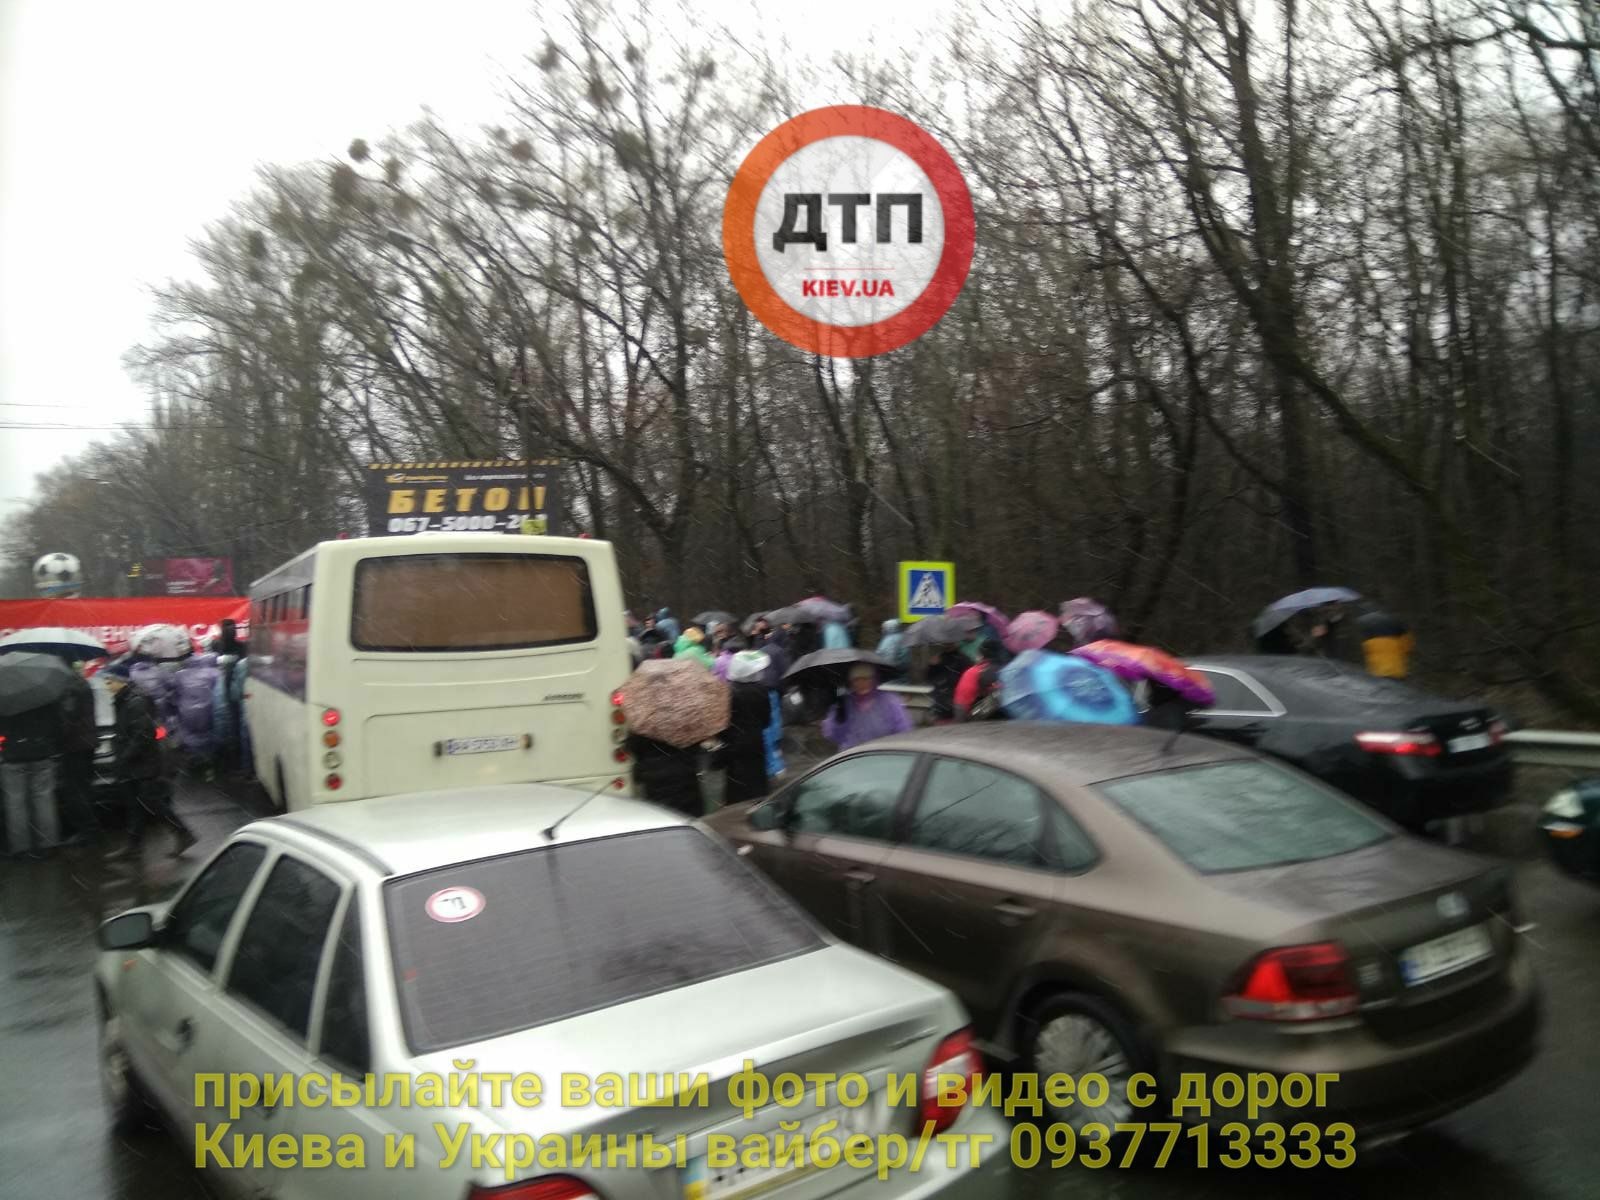 Автоновости: Одесскую трассу под Киевом парализовала акция протеста, фото — "Киев оперативный"